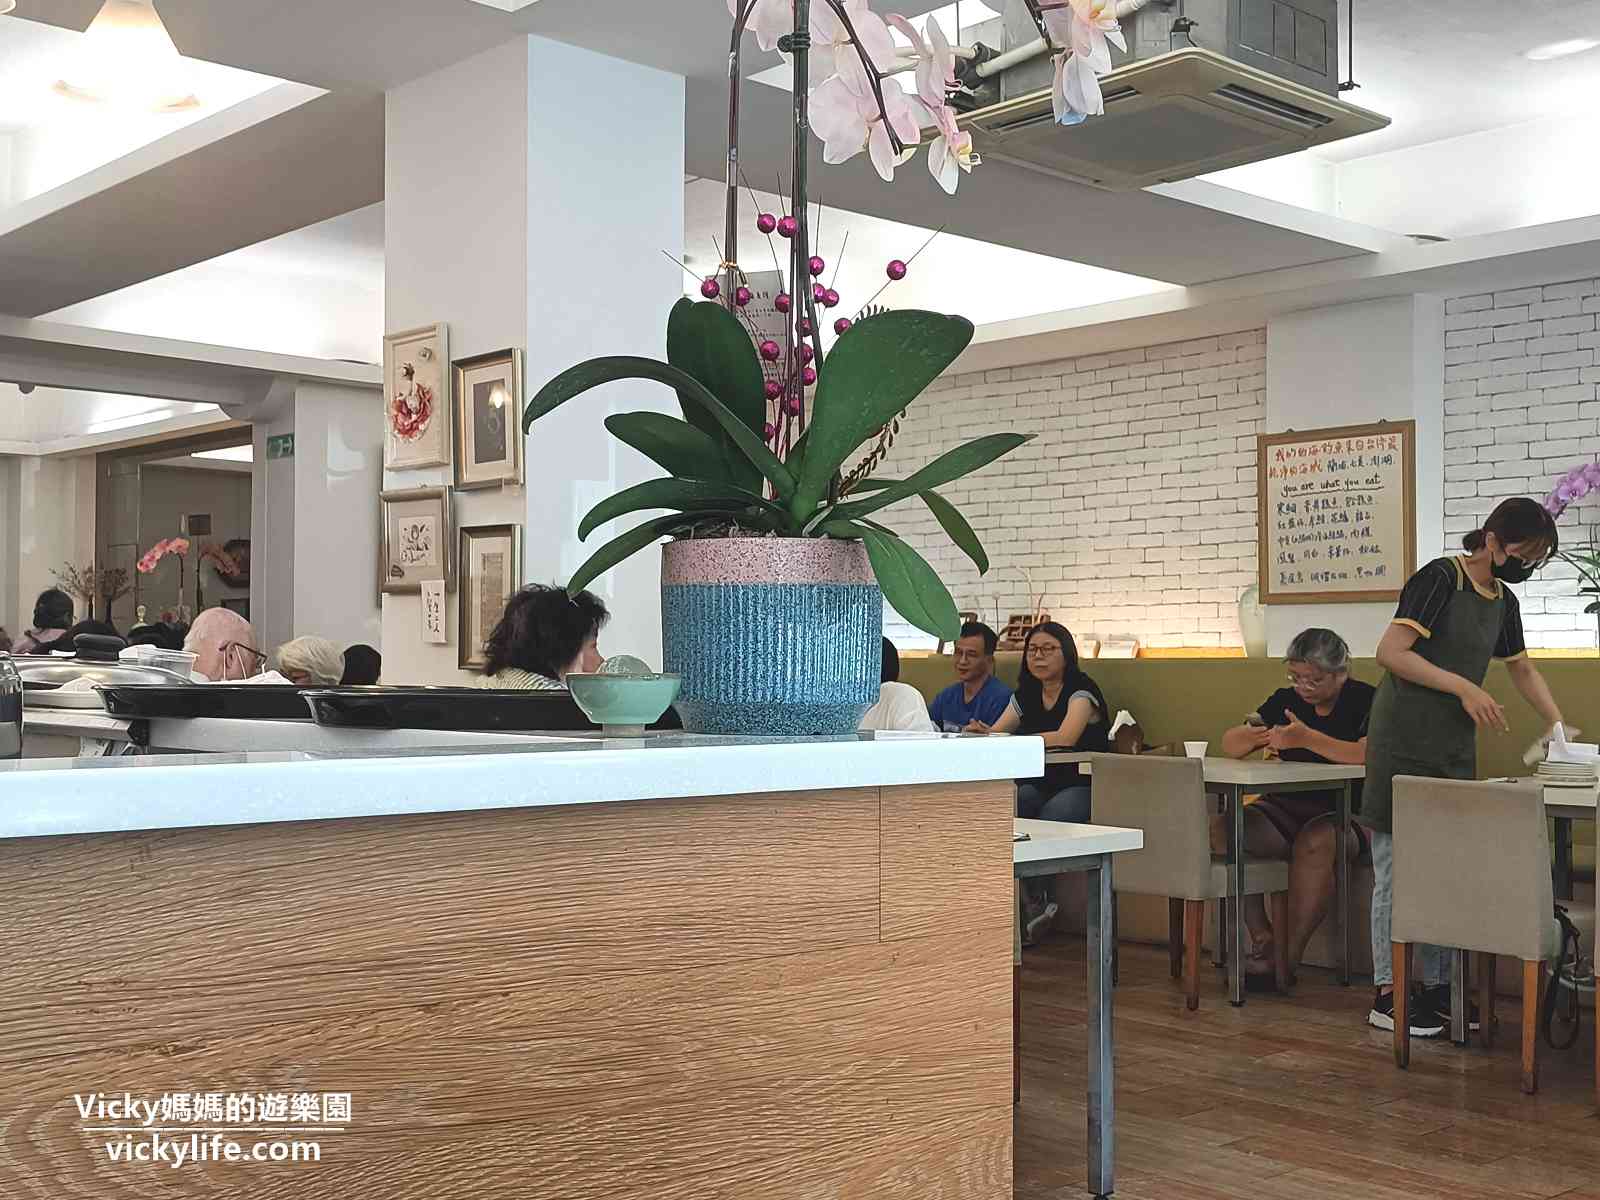 台南中西區美食︱咕嚕家庭料理館：台南大學附近、慶中街上的中式料理，這裡是銀髮族的愛店，非假日也滿到爆炸(菜單)